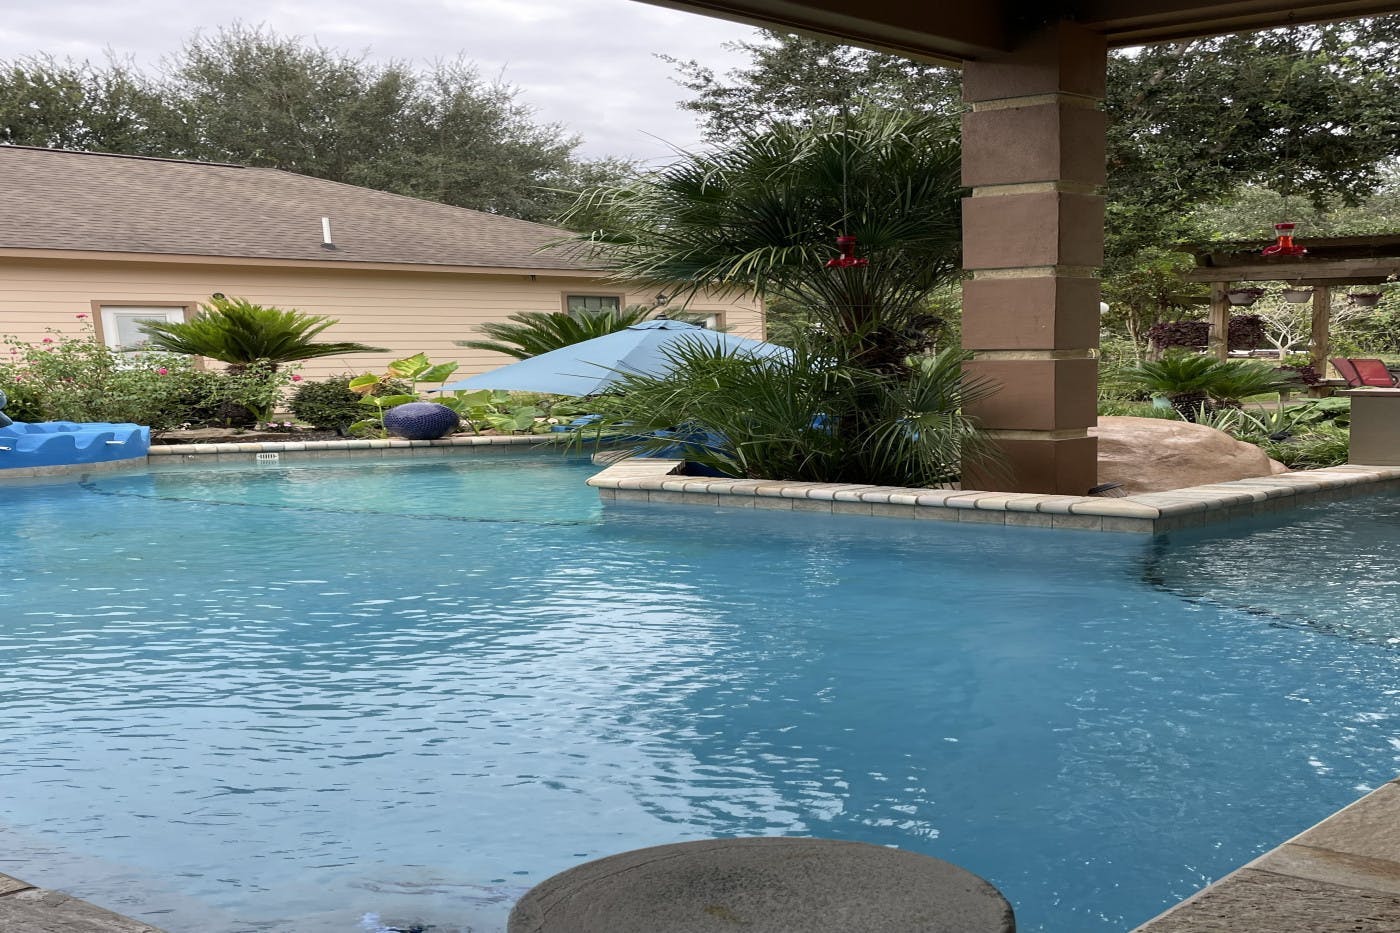 villa pool party and spacious backyard